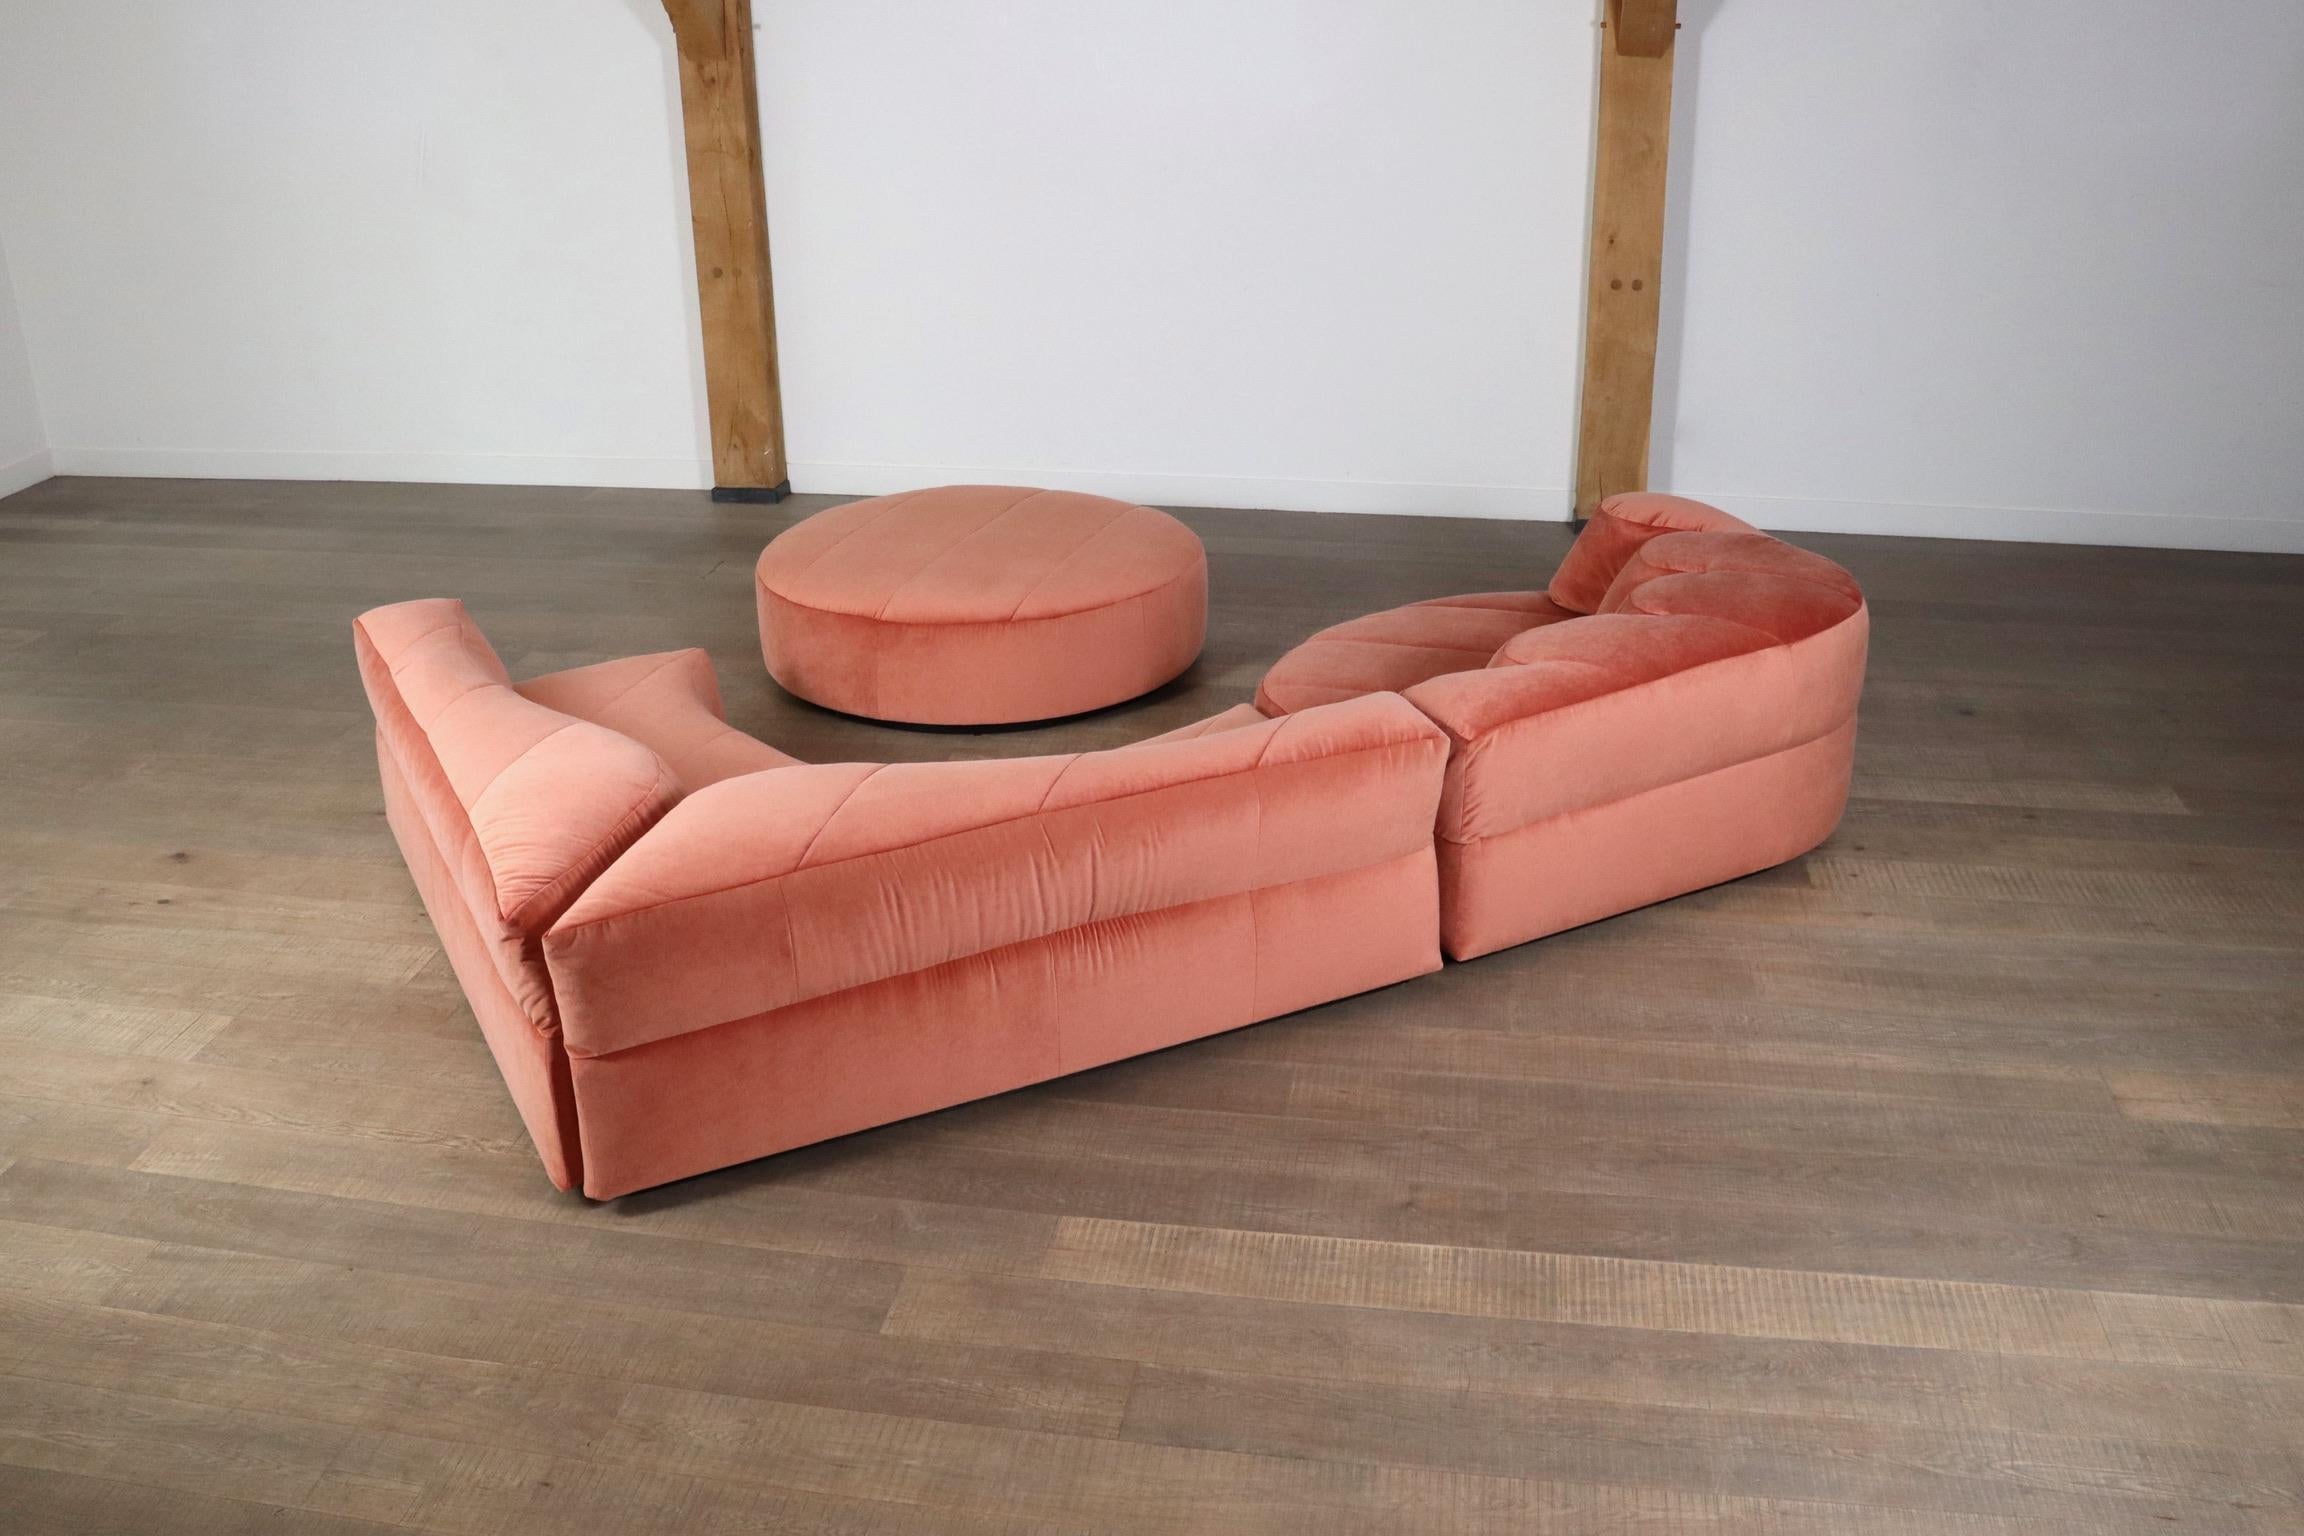 Roche Bobois “Paysage” Sofa In Coral Velvet By Hans Hopfer For Roche Bobois 1974 12